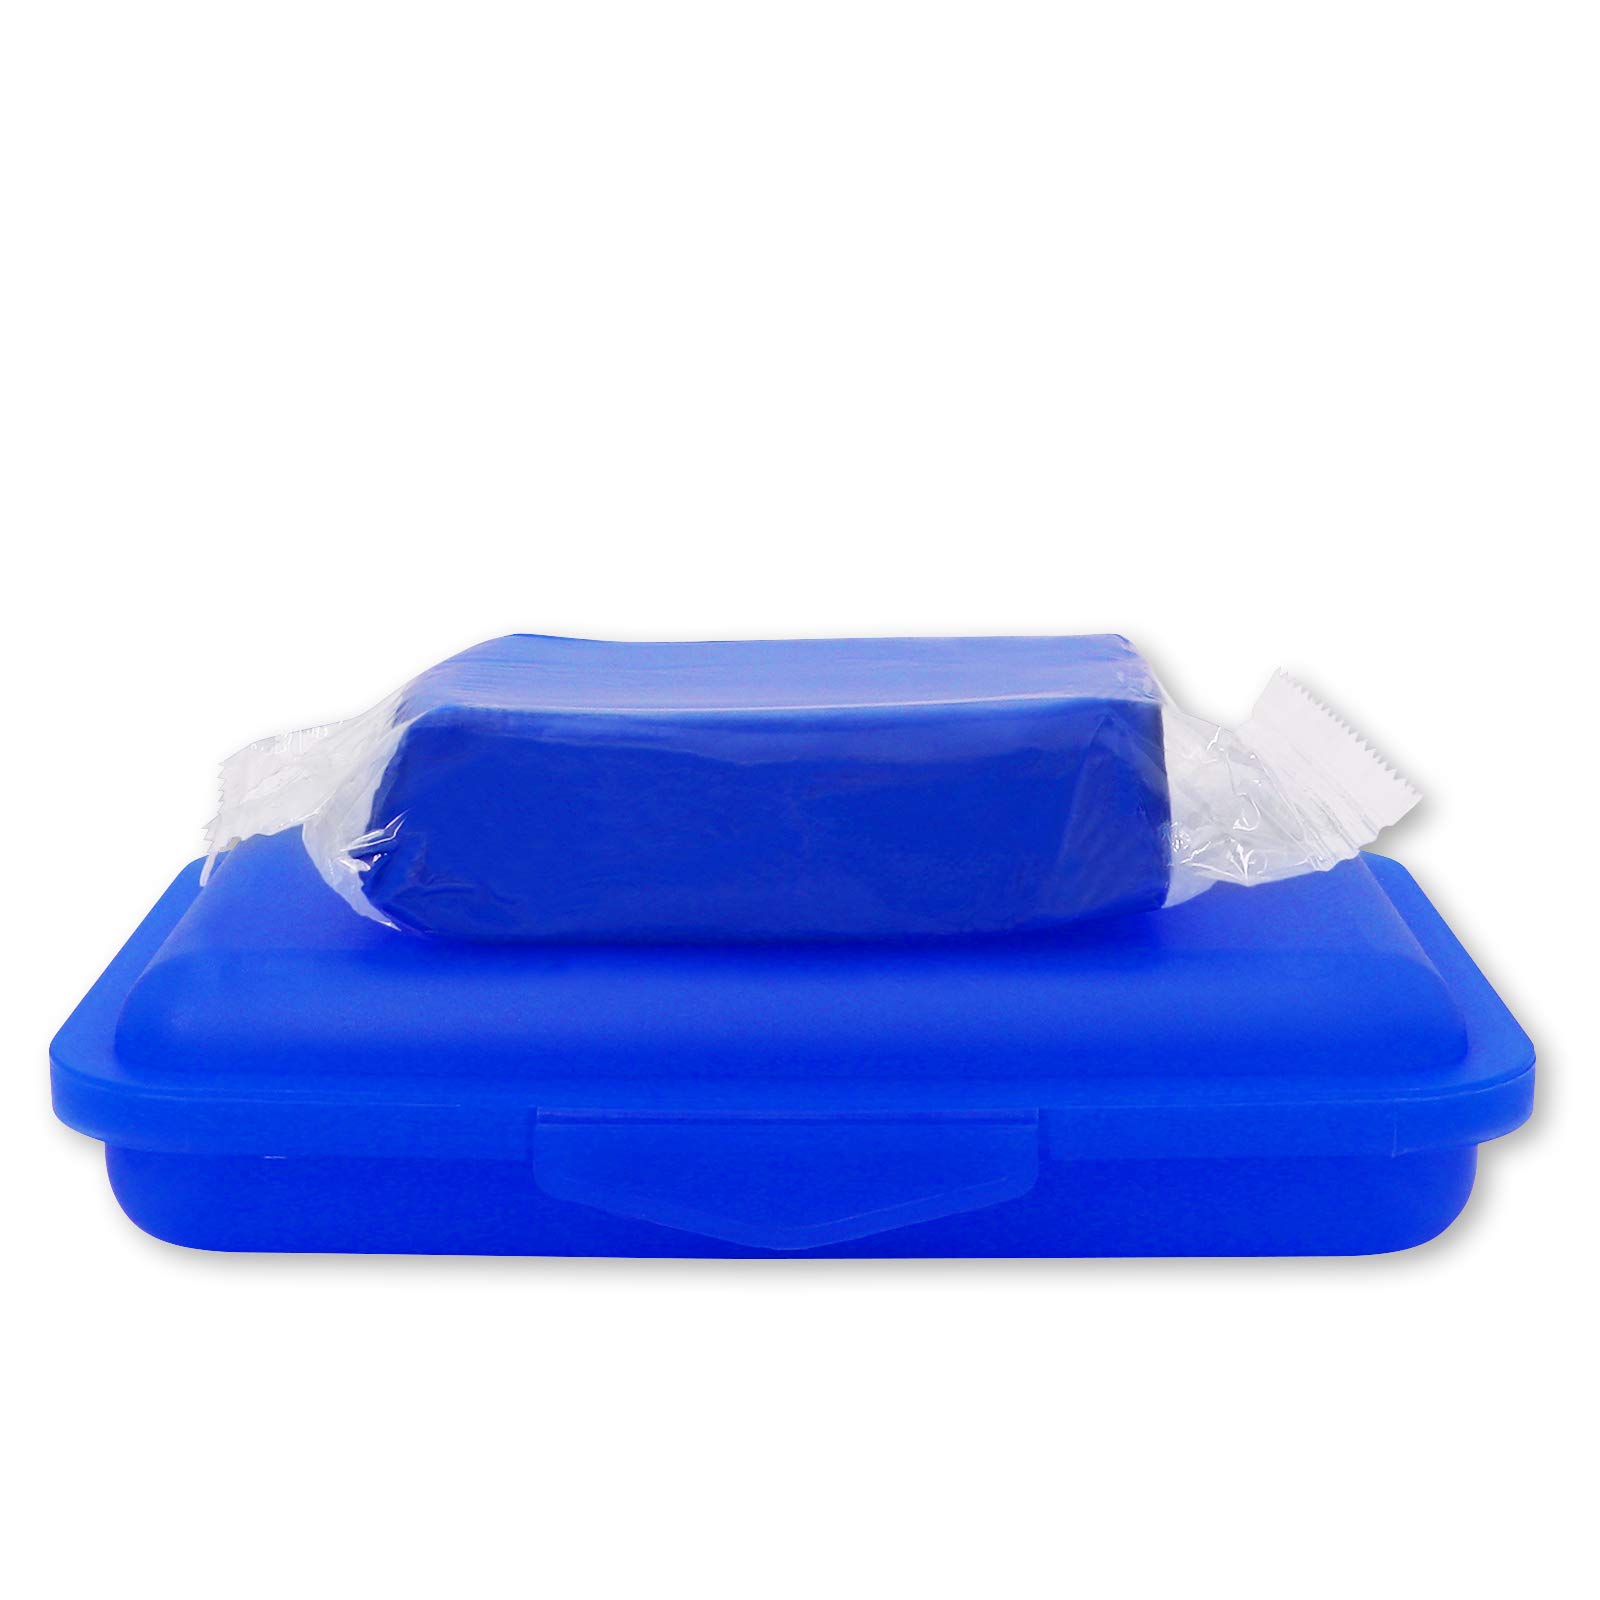 Reinigungsknete blau 200 g + Aufbewahrungsbox - Polierknete Lackknete Clay-Bar Auto-Lack-Knete Lackpolitur - entfernt Baumharz Insekten Flugrost Farbspuren Bremsstaub u.v.m.